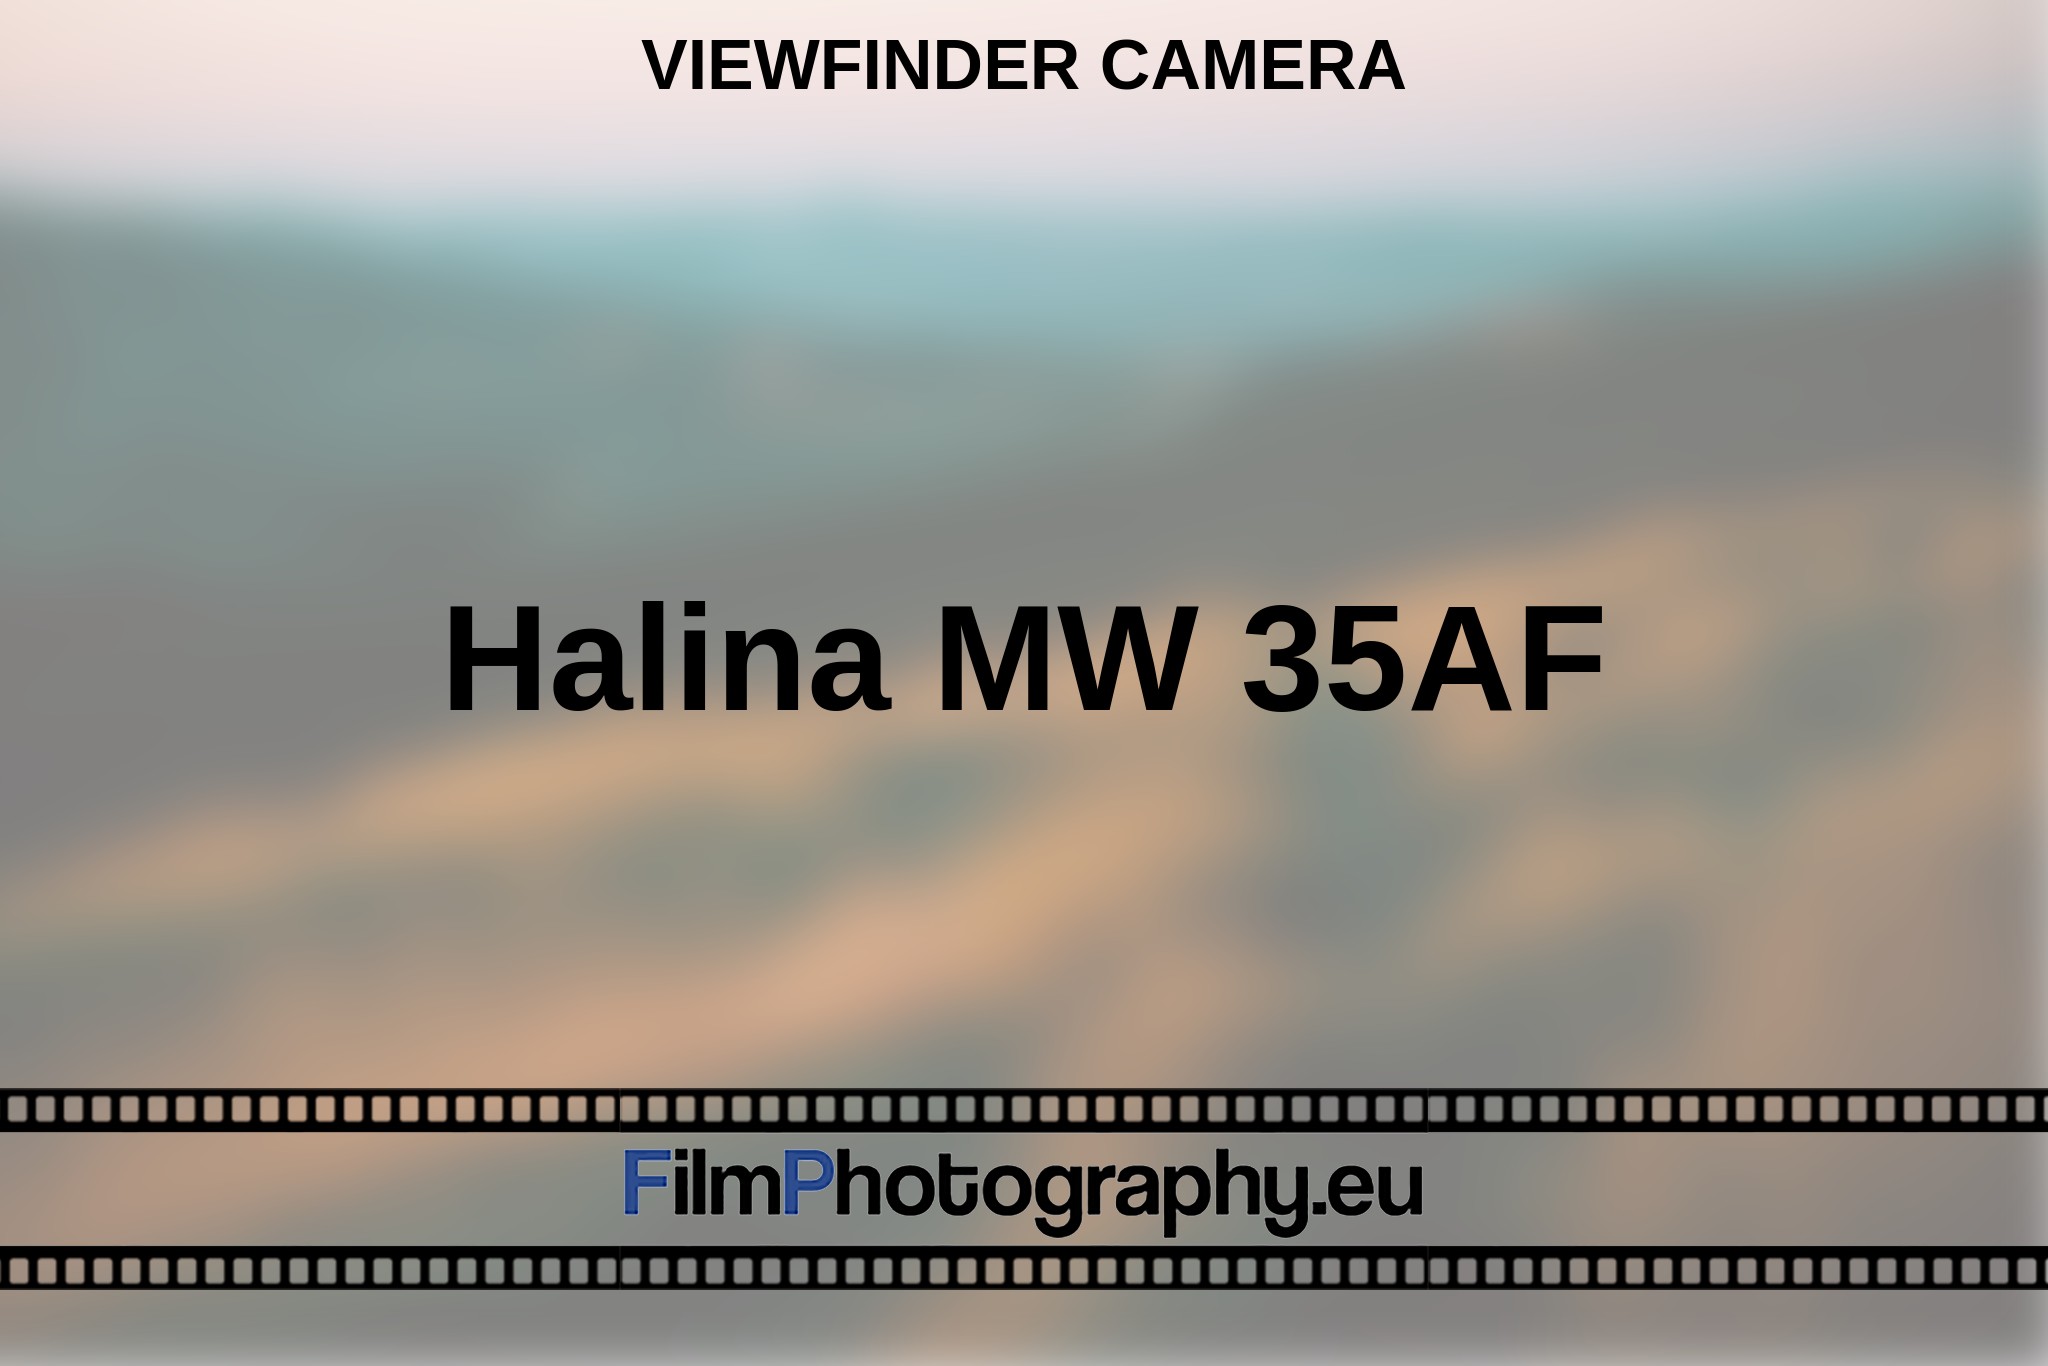 halina-mw-35af-viewfinder-camera-en-bnv.jpg